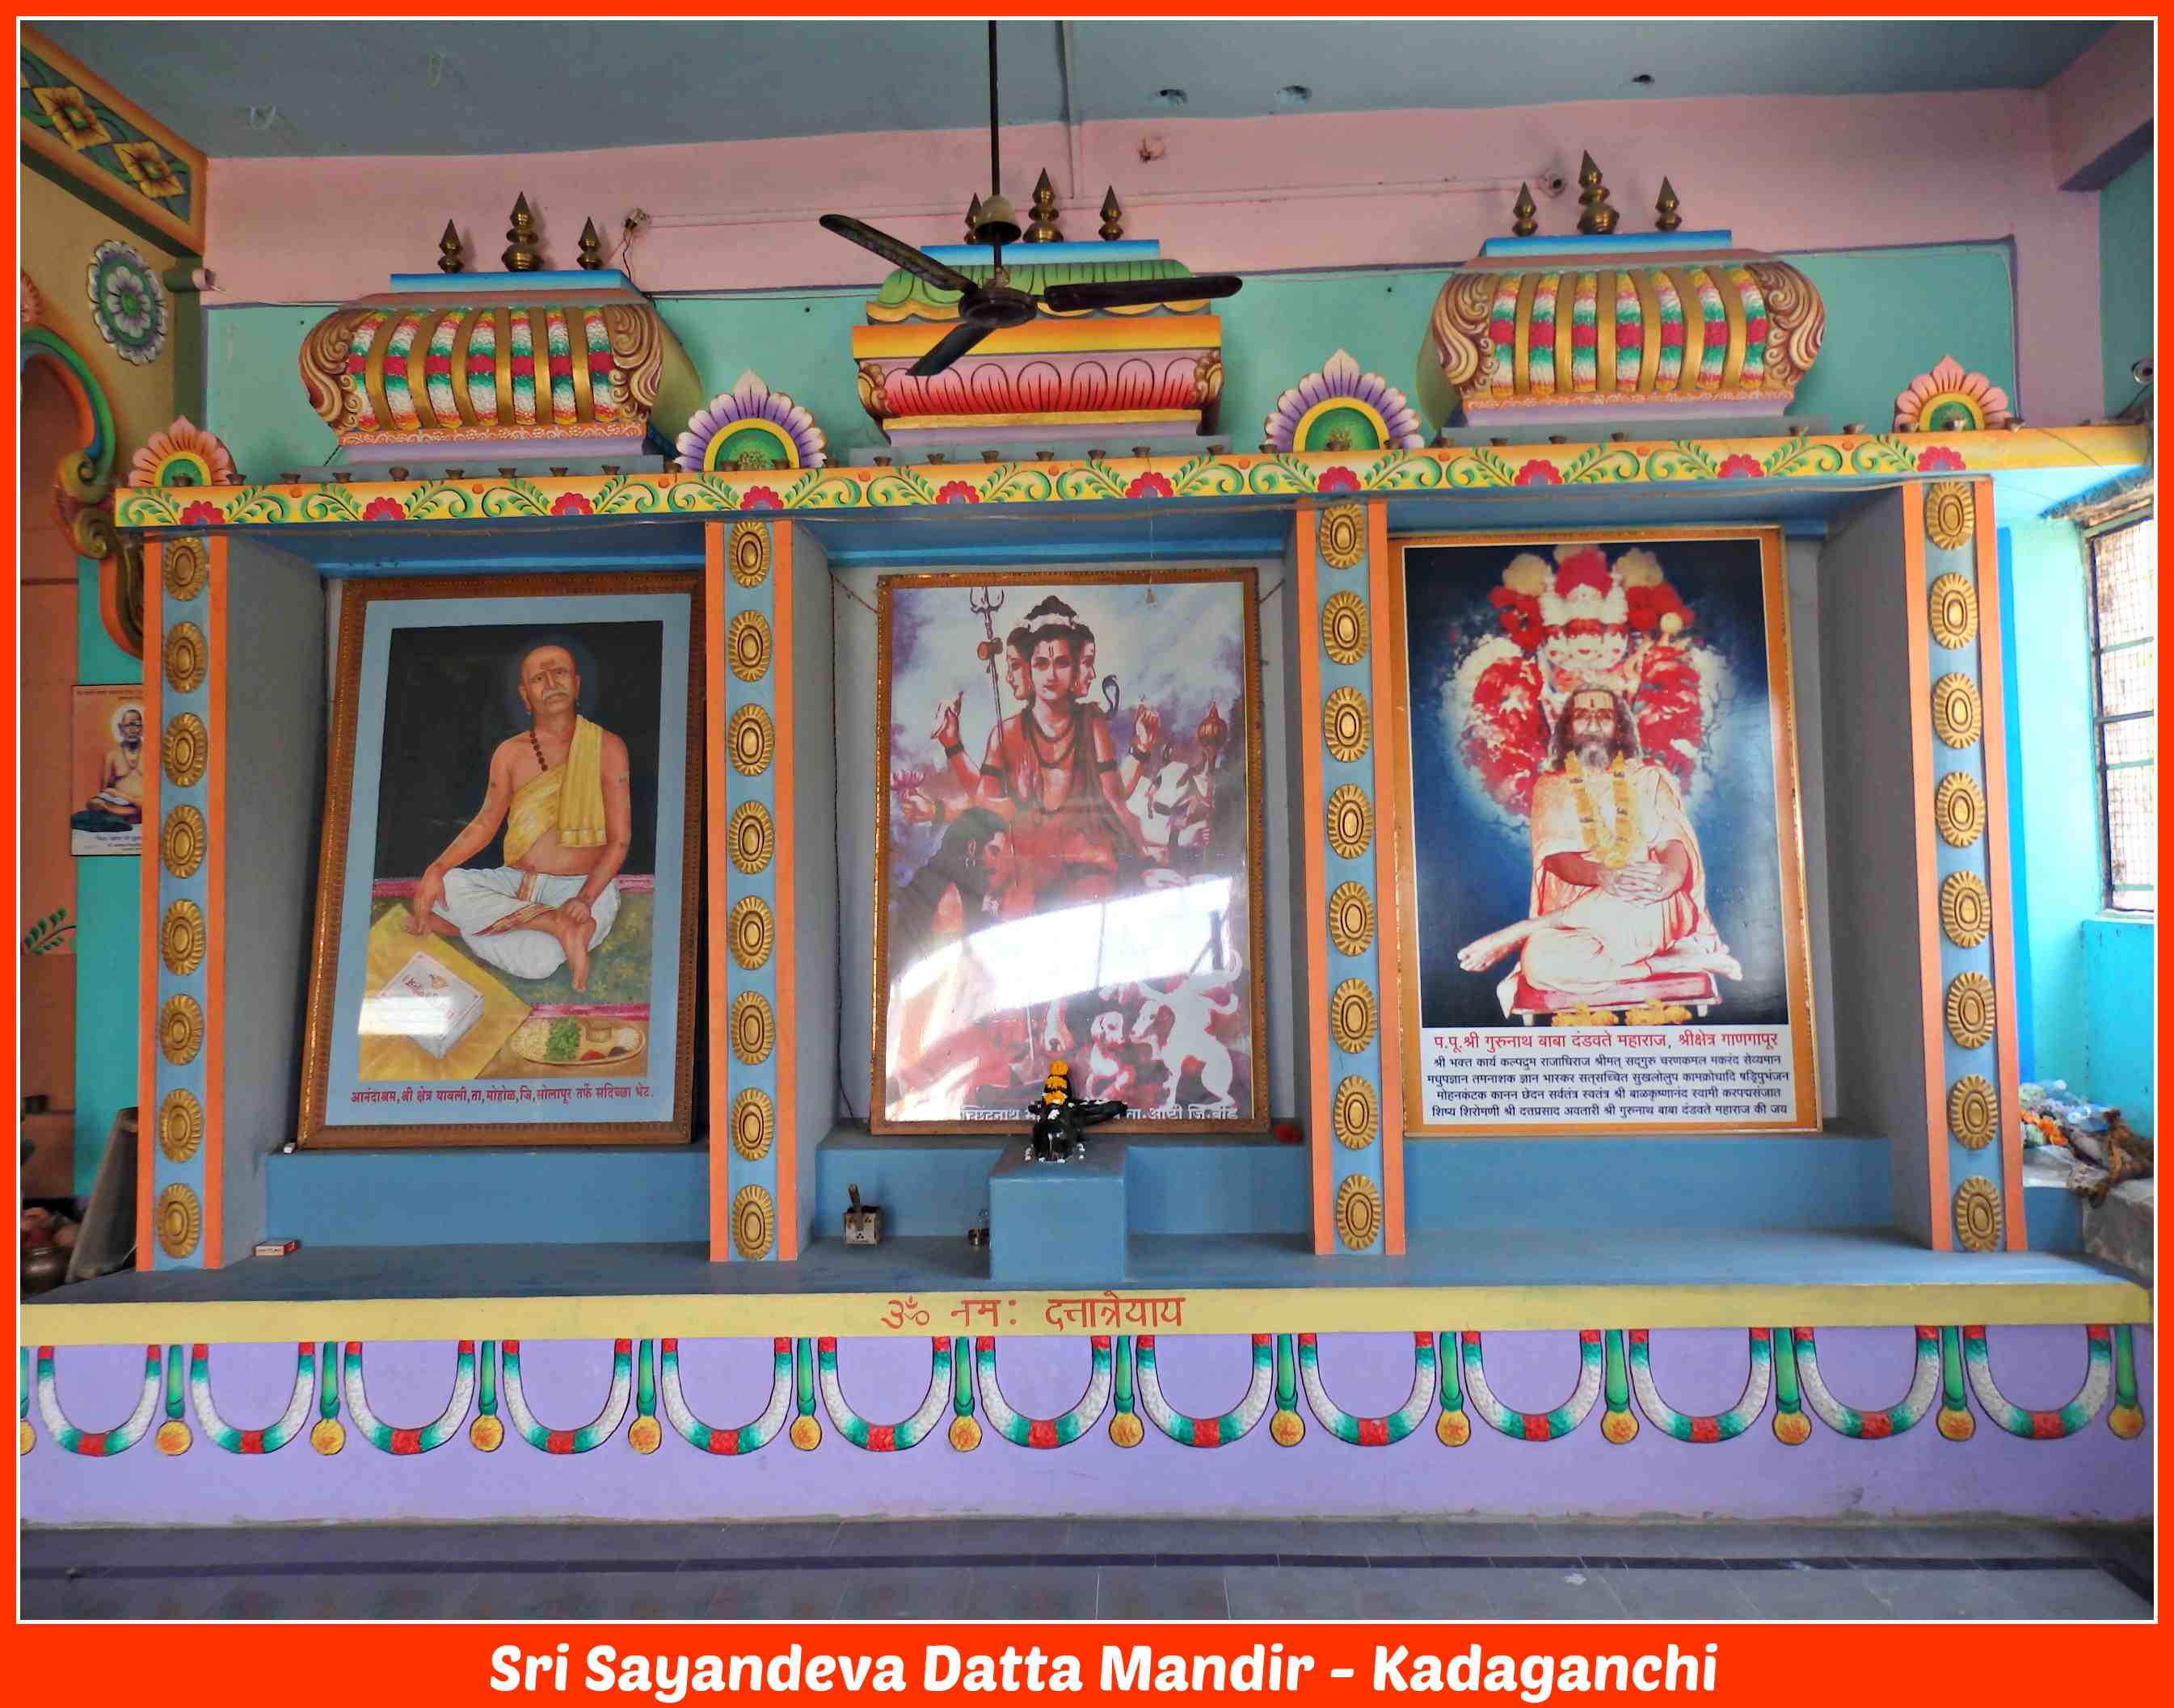 Sri Kshetra Kadaganchi Datta Mandir